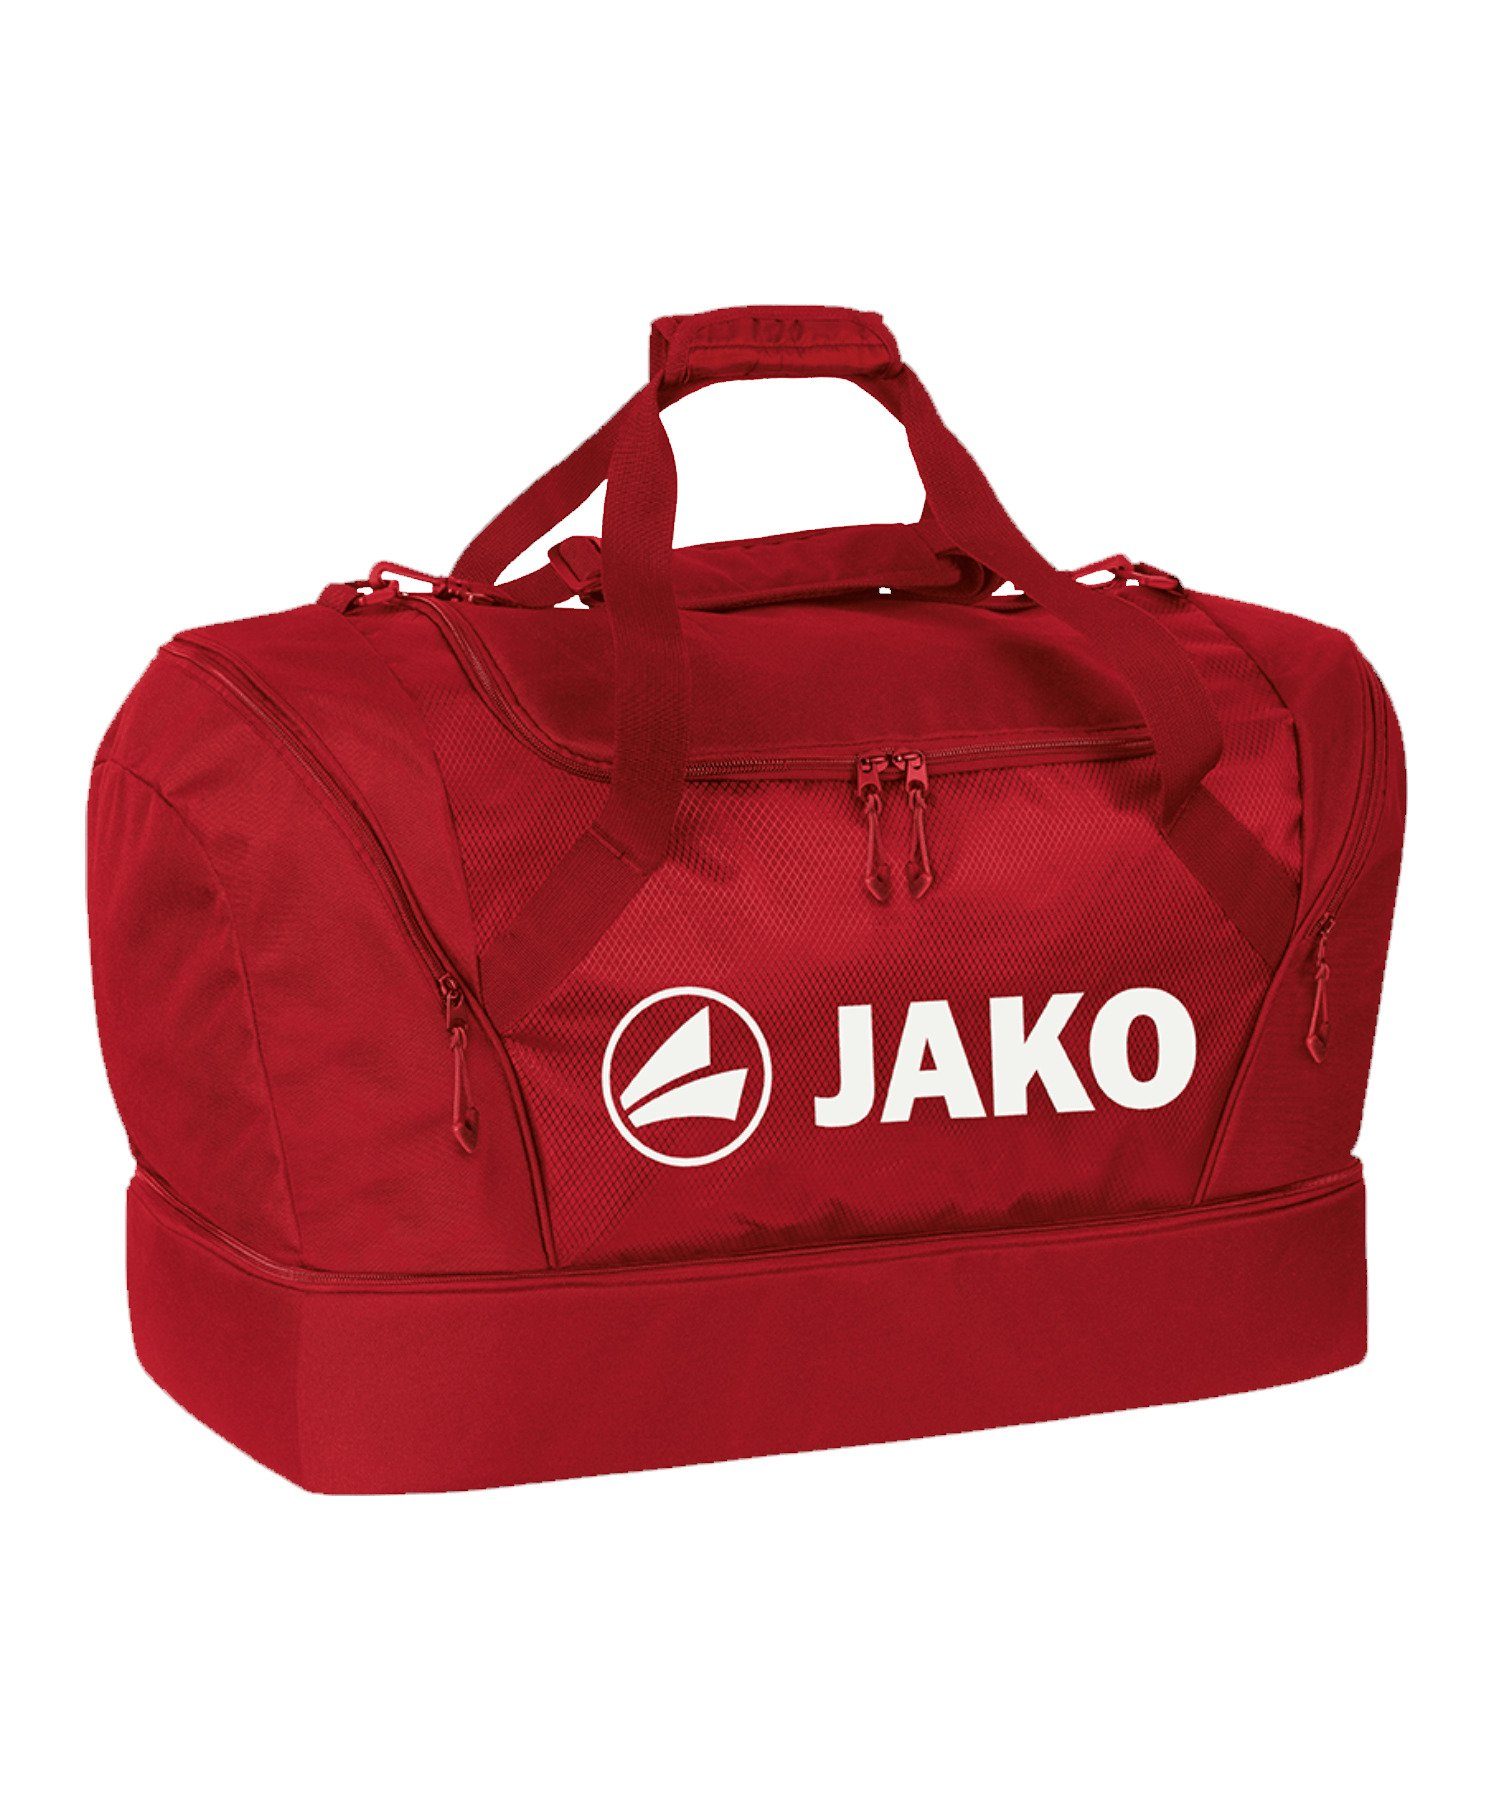 Jako Freizeittasche Sporttasche mit Bodenfach Senior, breit rot